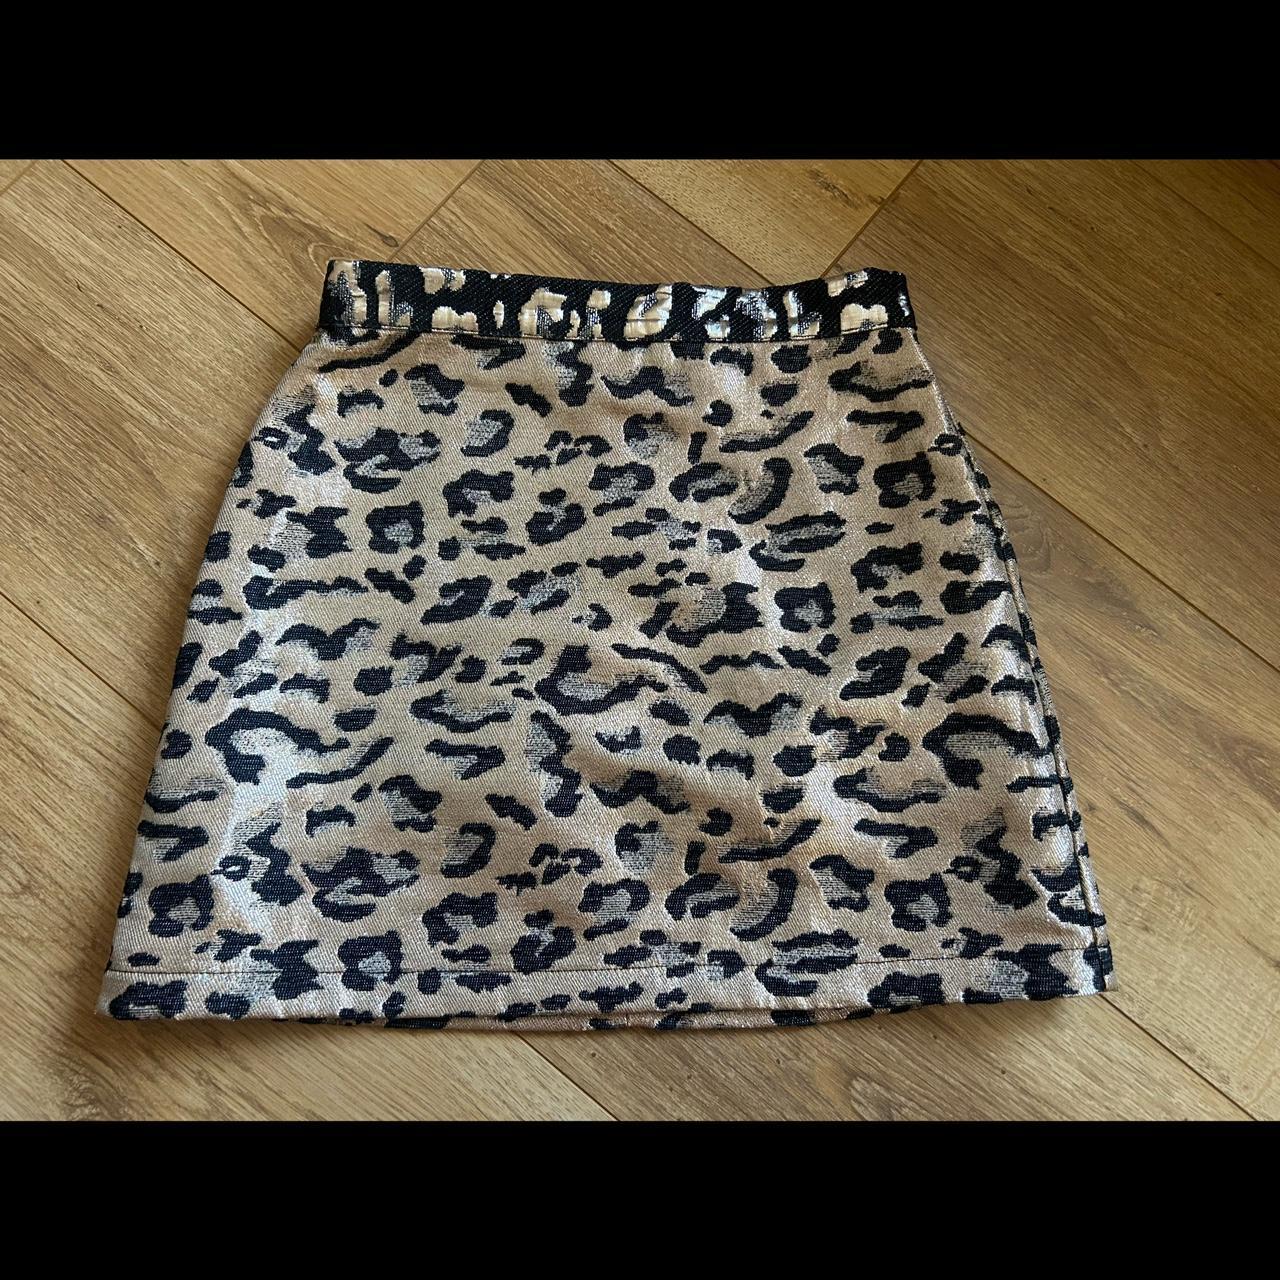 Leopard Print Pelmet Skirt - Rock N Roll Girls - Topshop Magazine | Topshop  outfit, Skirts, Leopard print skirt